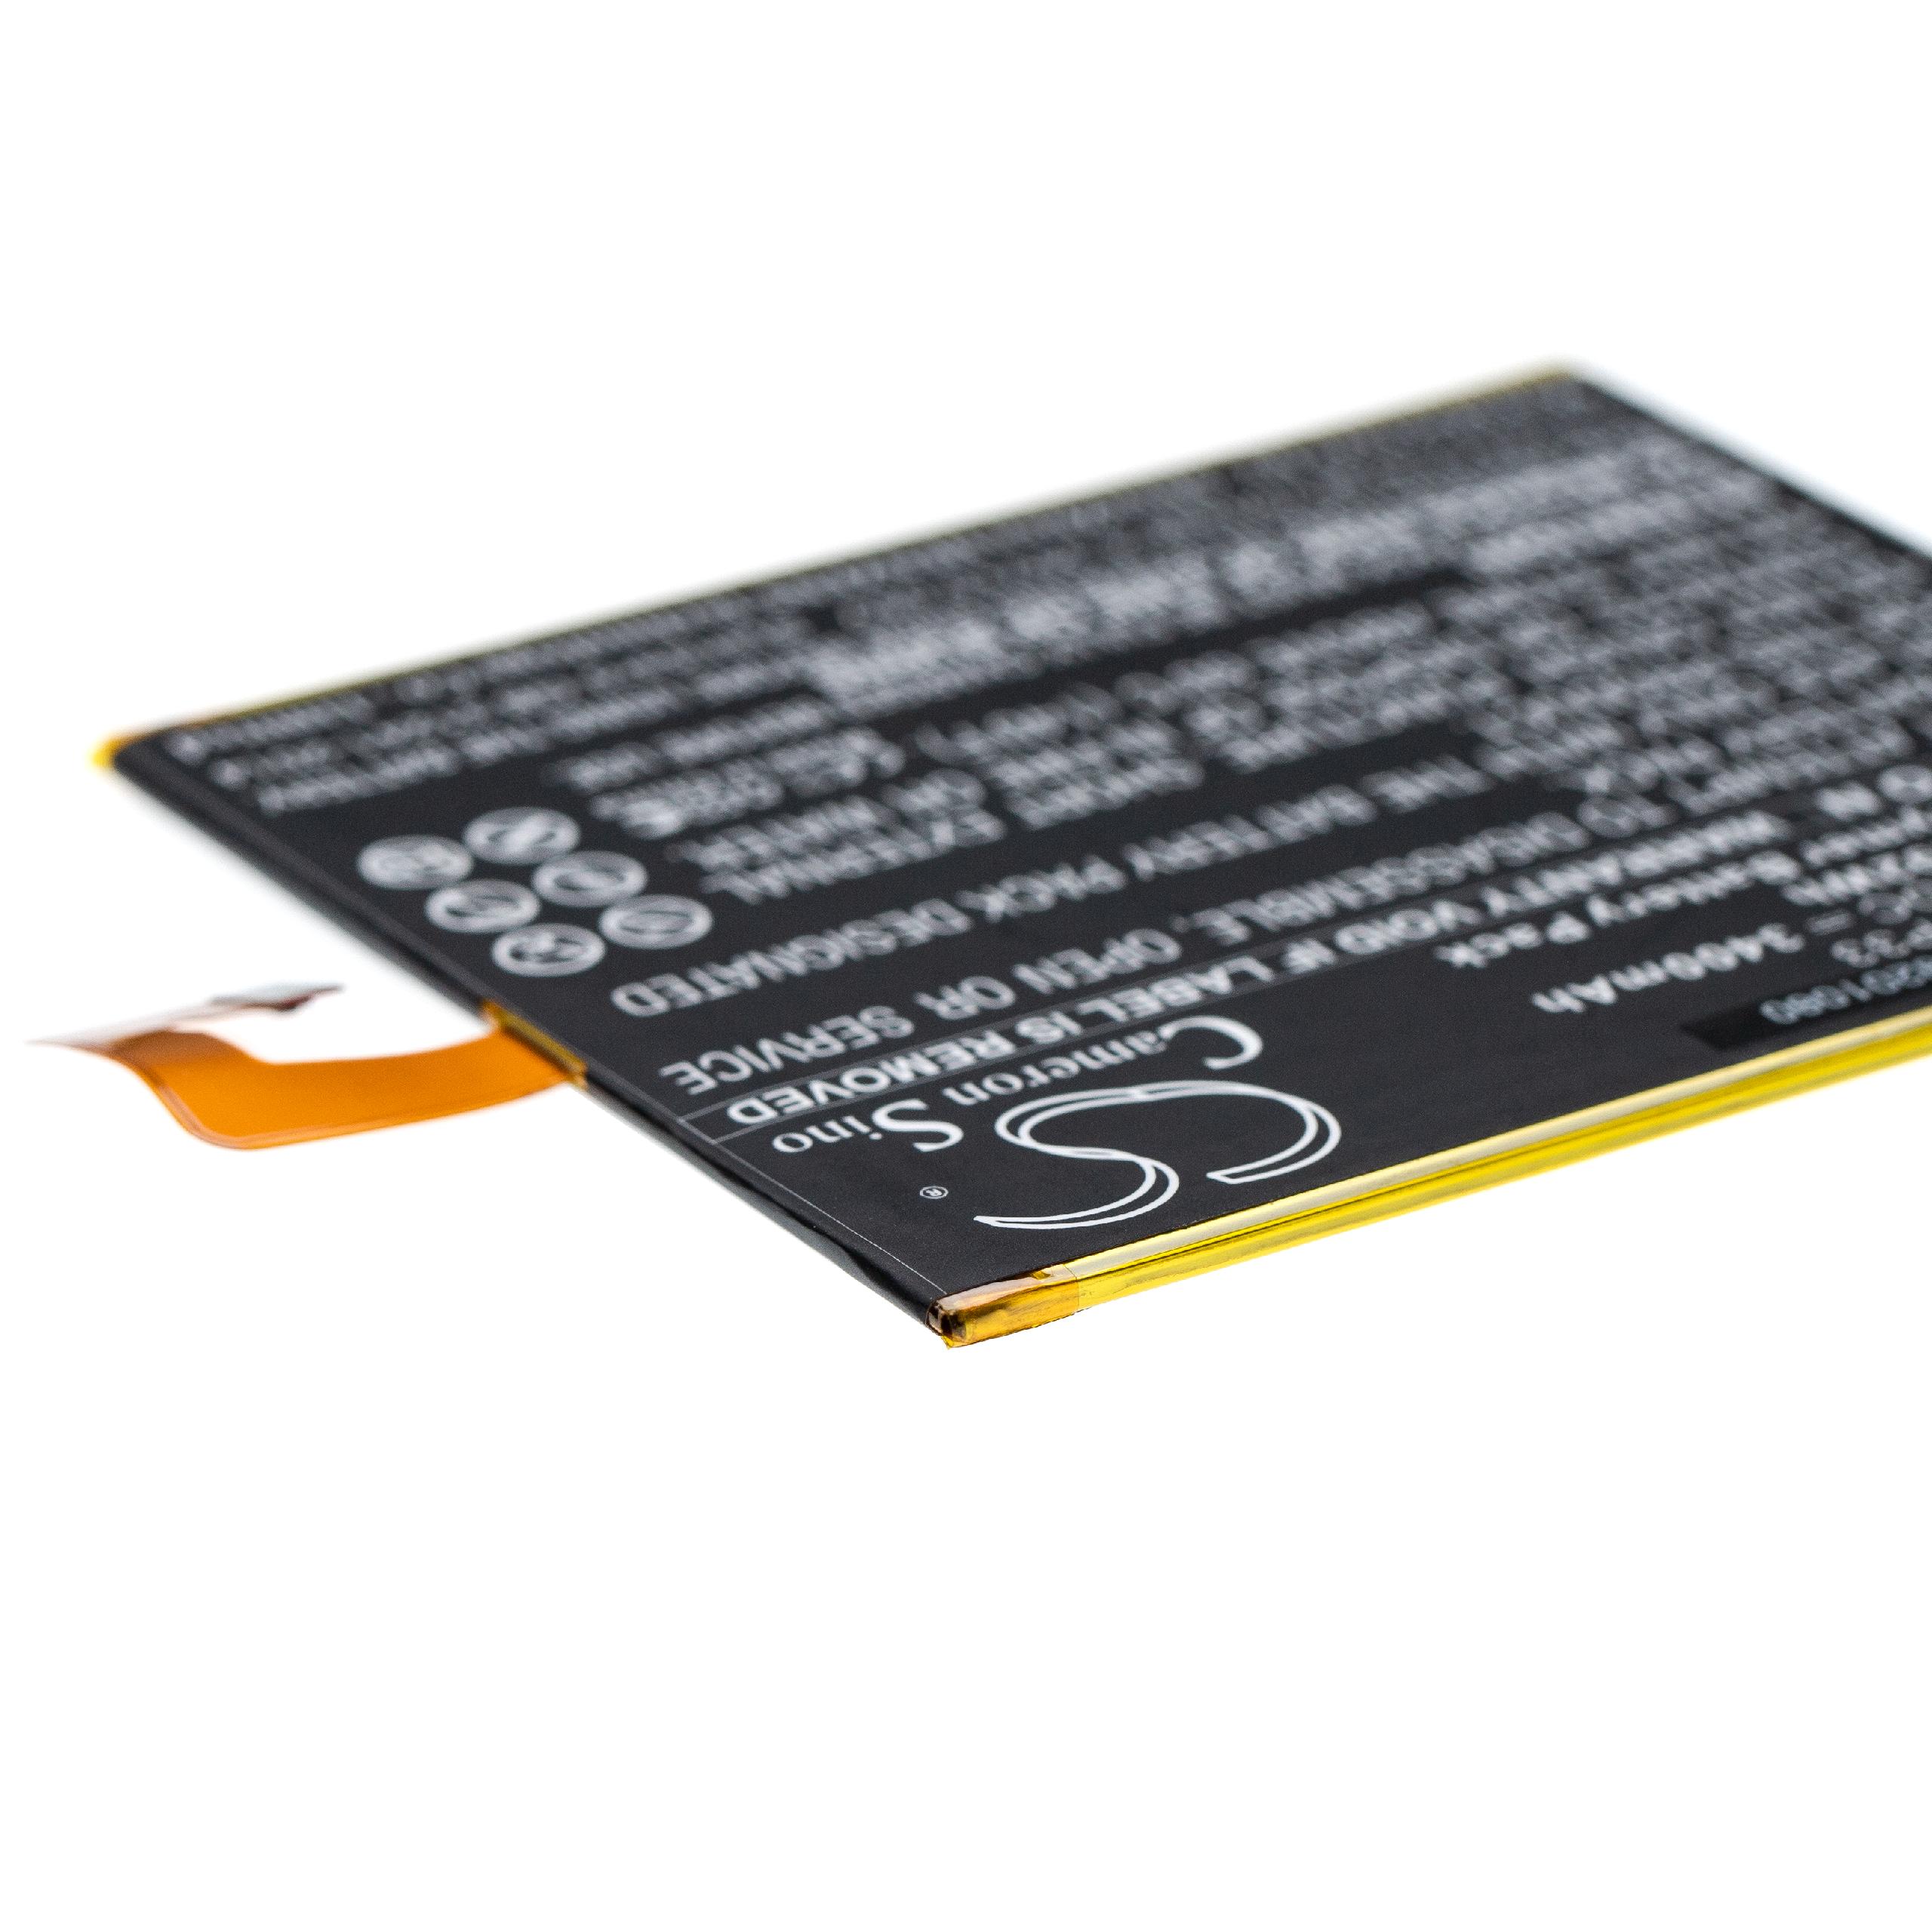 Batterie remplace Lenovo L16D1P33 pour tablette - 3400mAh 3,8V Li-polymère